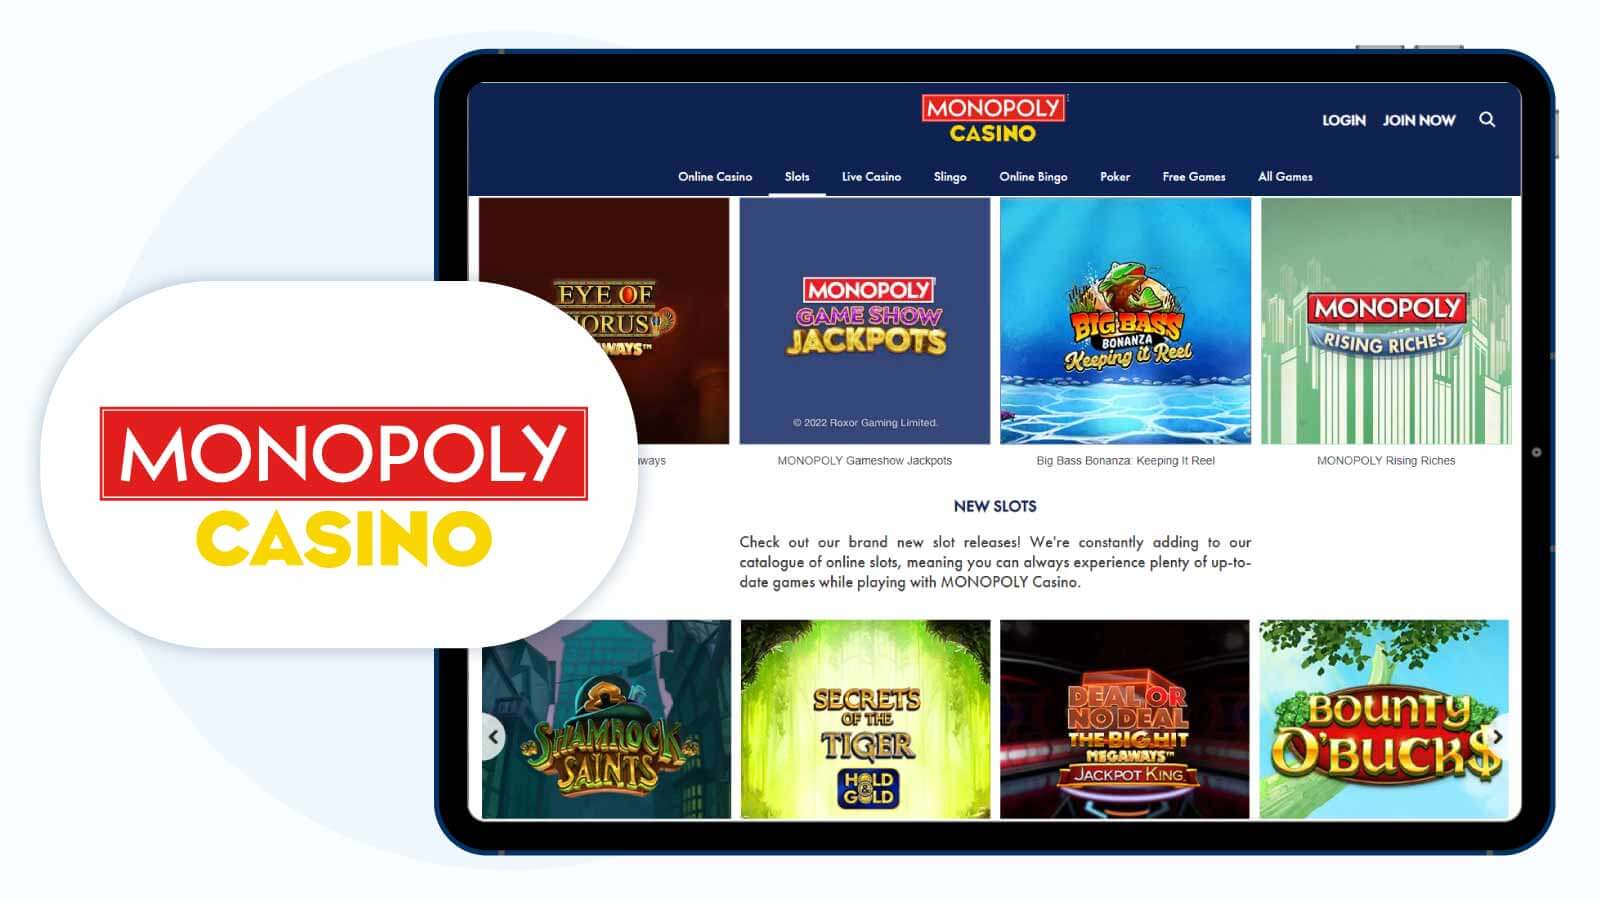 #2. Monopoly – Best Slot Bonus UK for Game Variety